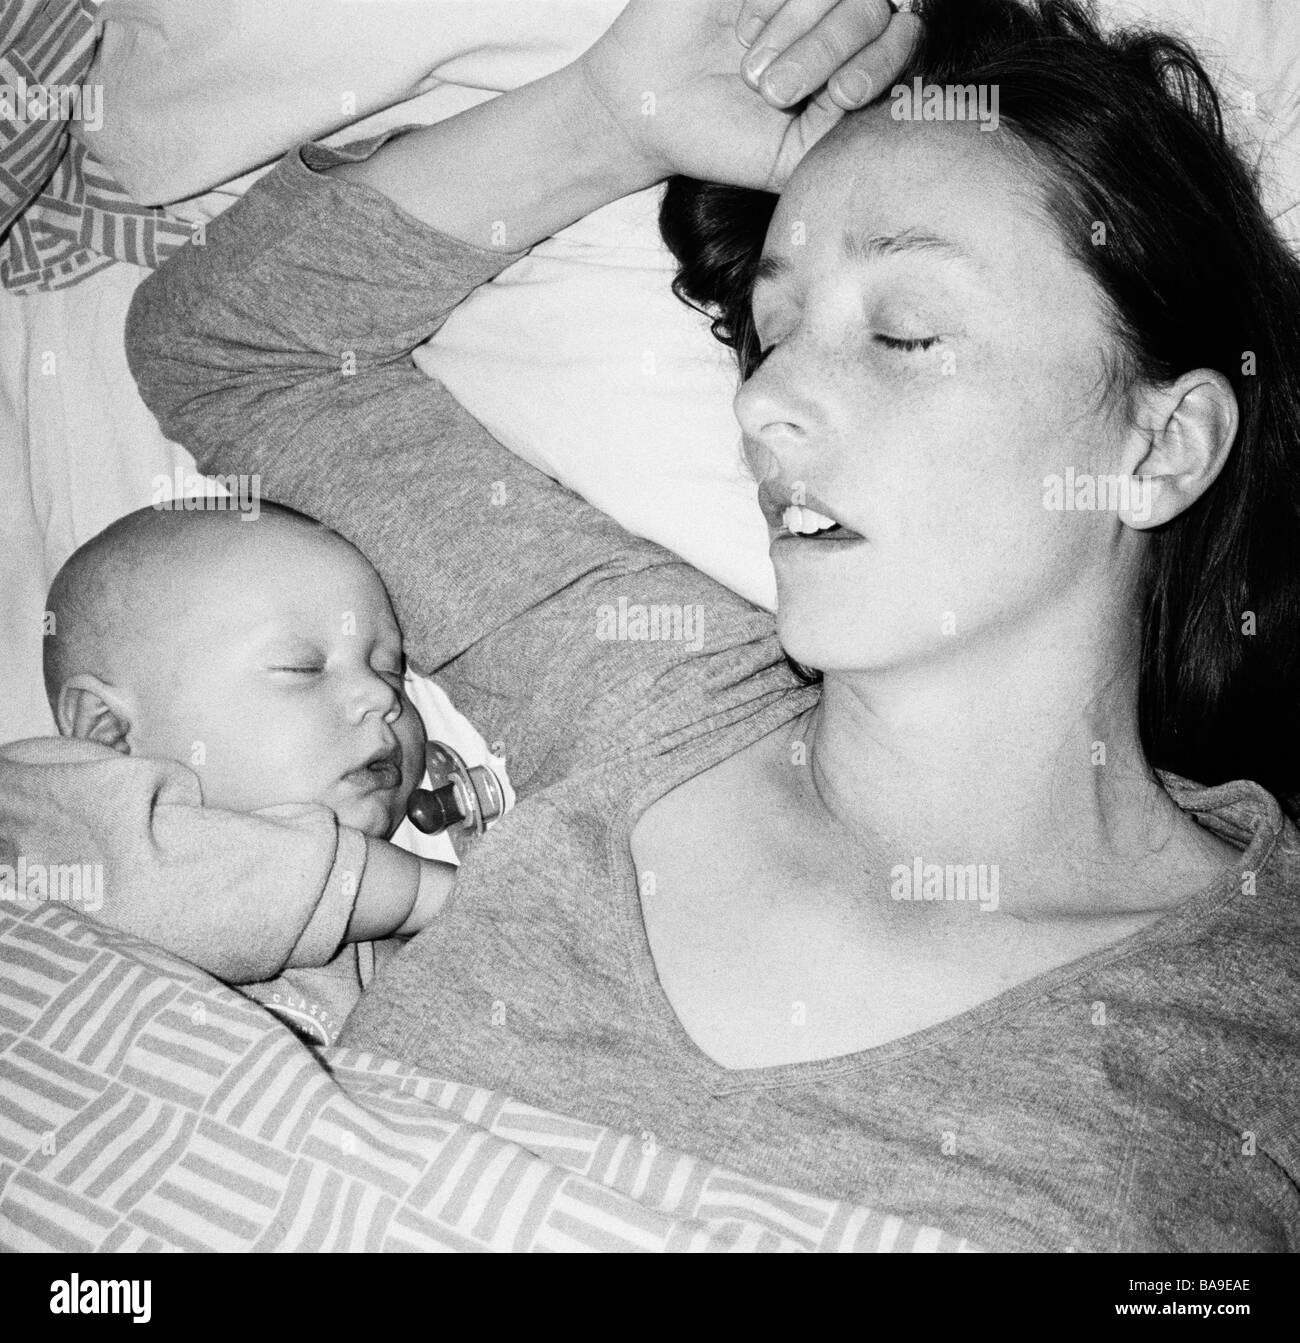 Mutter und Sohn schläft neben einander, Stockholm, Schweden. Stockfoto